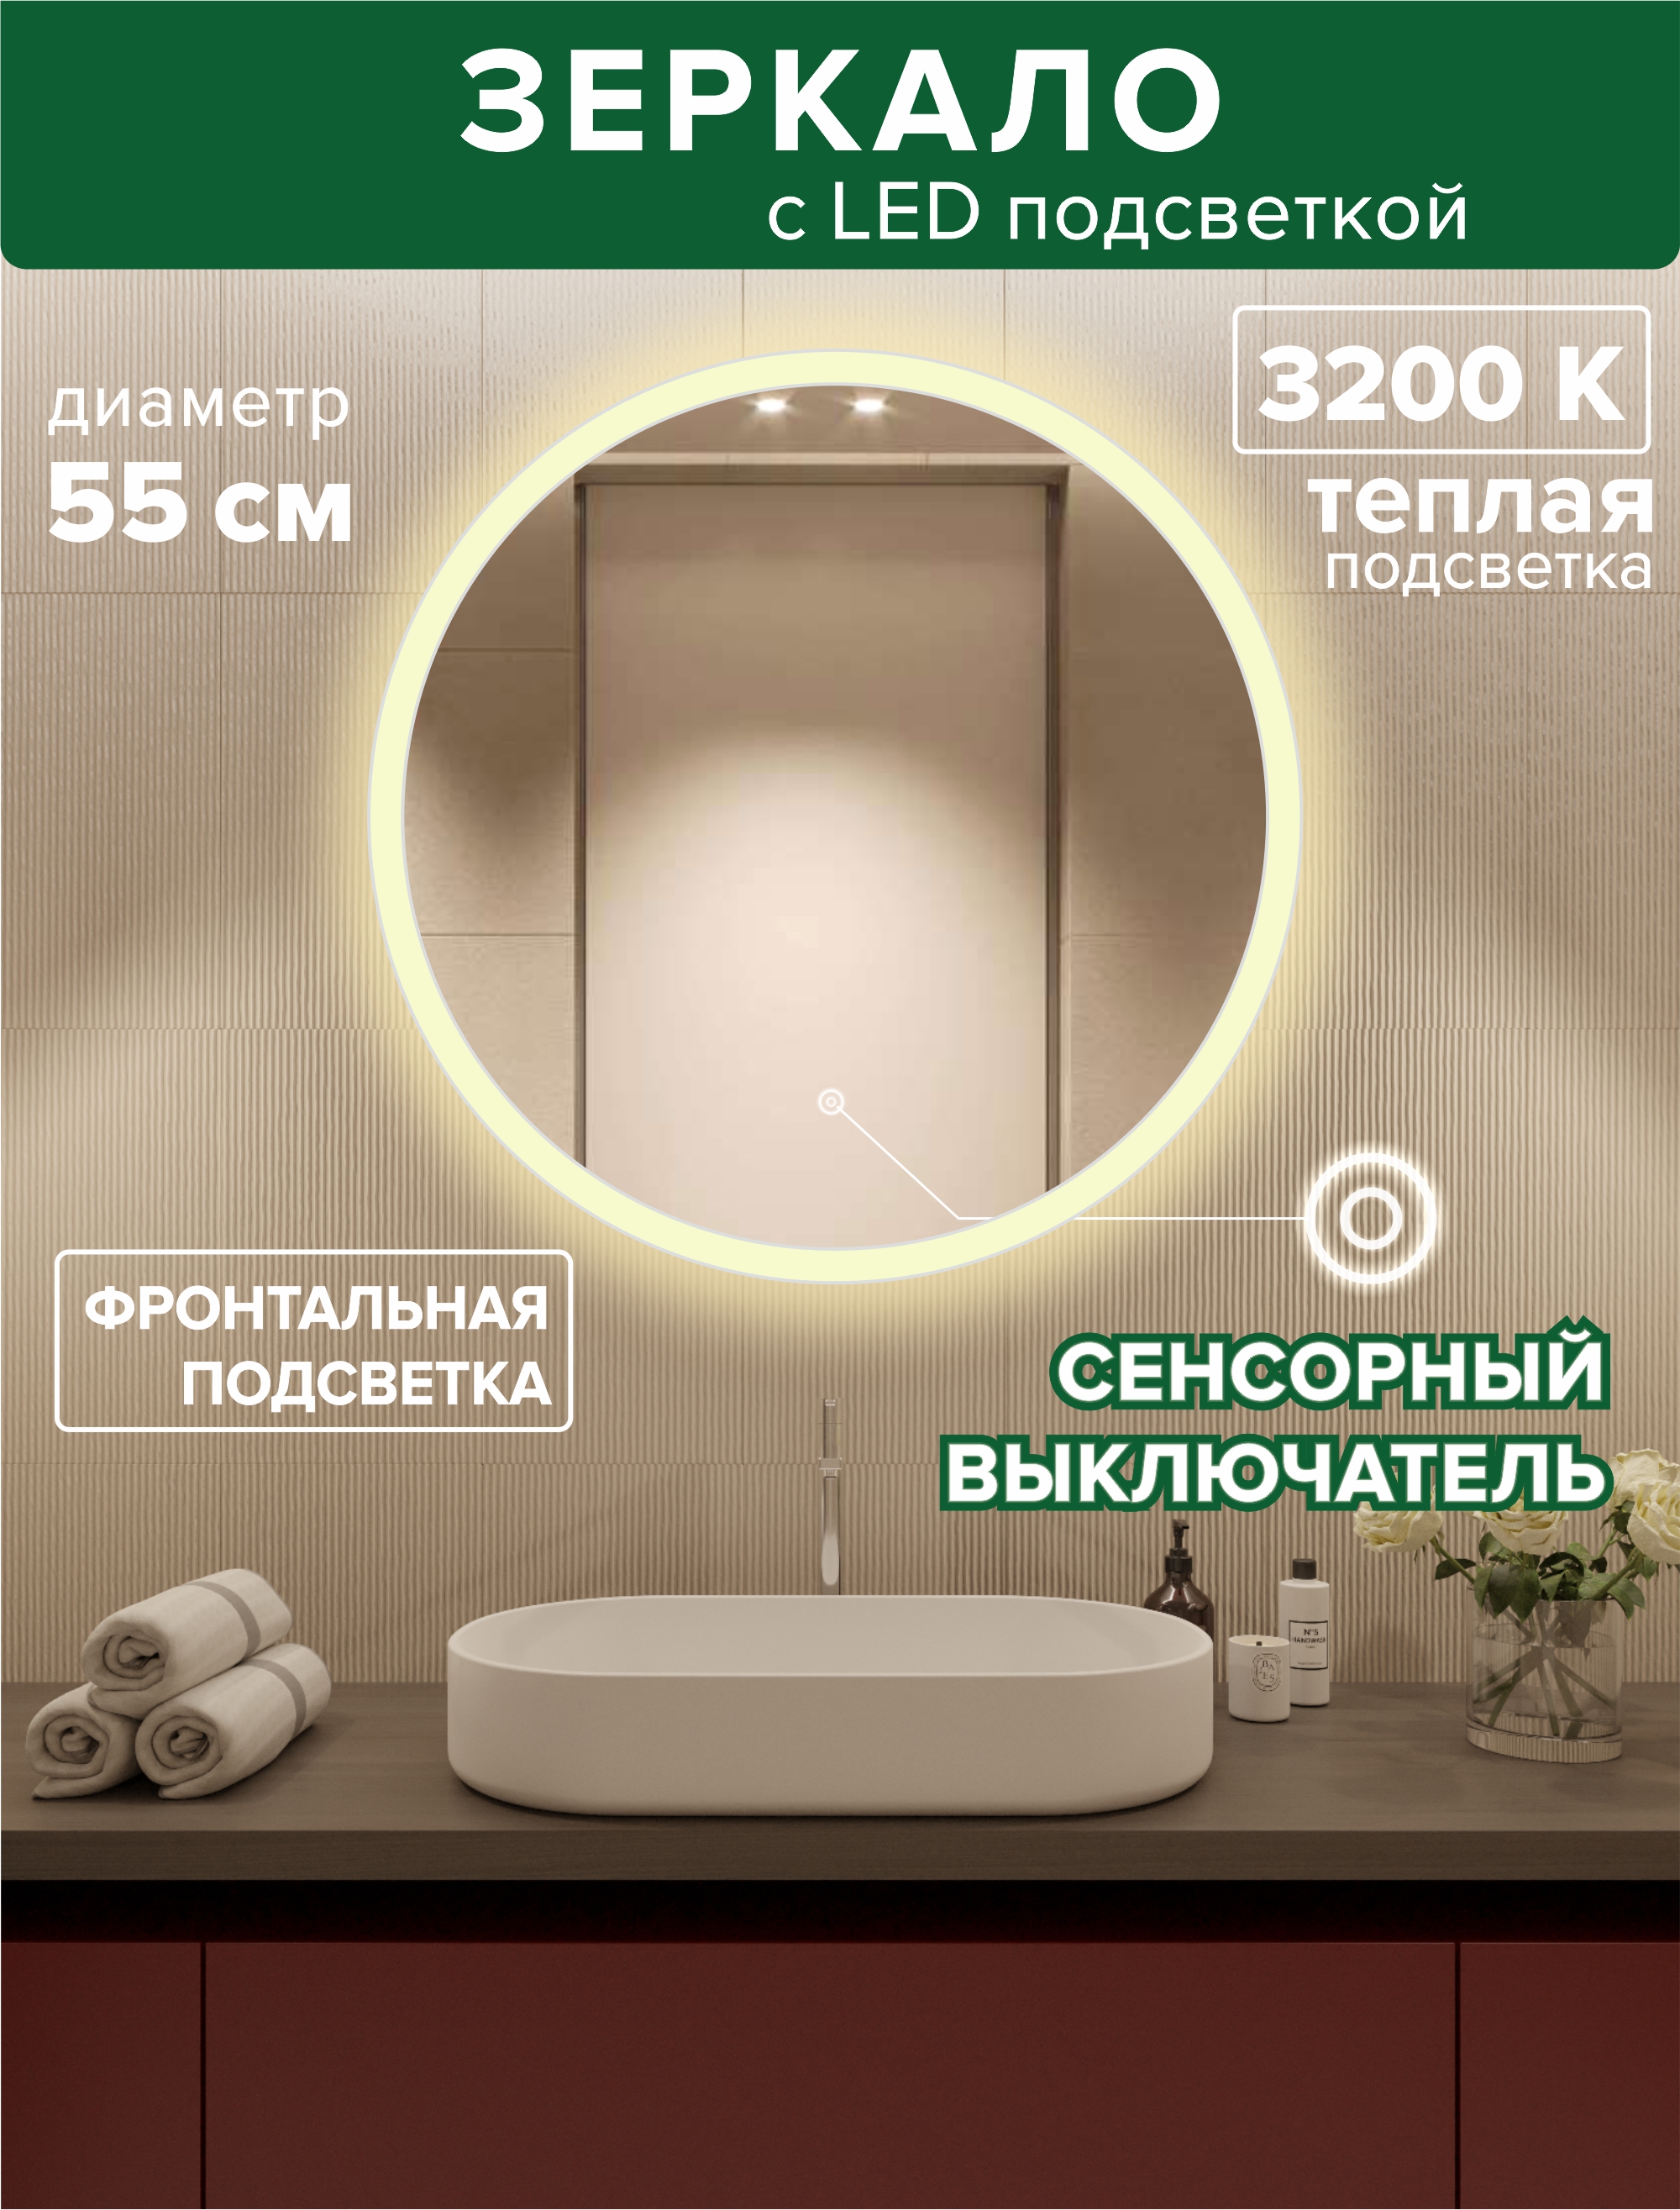 Зеркало для ванной Alfa Mirrors MSvet-55t фронтальная теплая подсветка 3200К, круглое 55см светодиодная гирлянда rich led 10 м 100 led 220 в соединяемая влагозащитный колпачок двойная изоляция теплая белая бронзовый провод rl s10c 220v c2bz ww